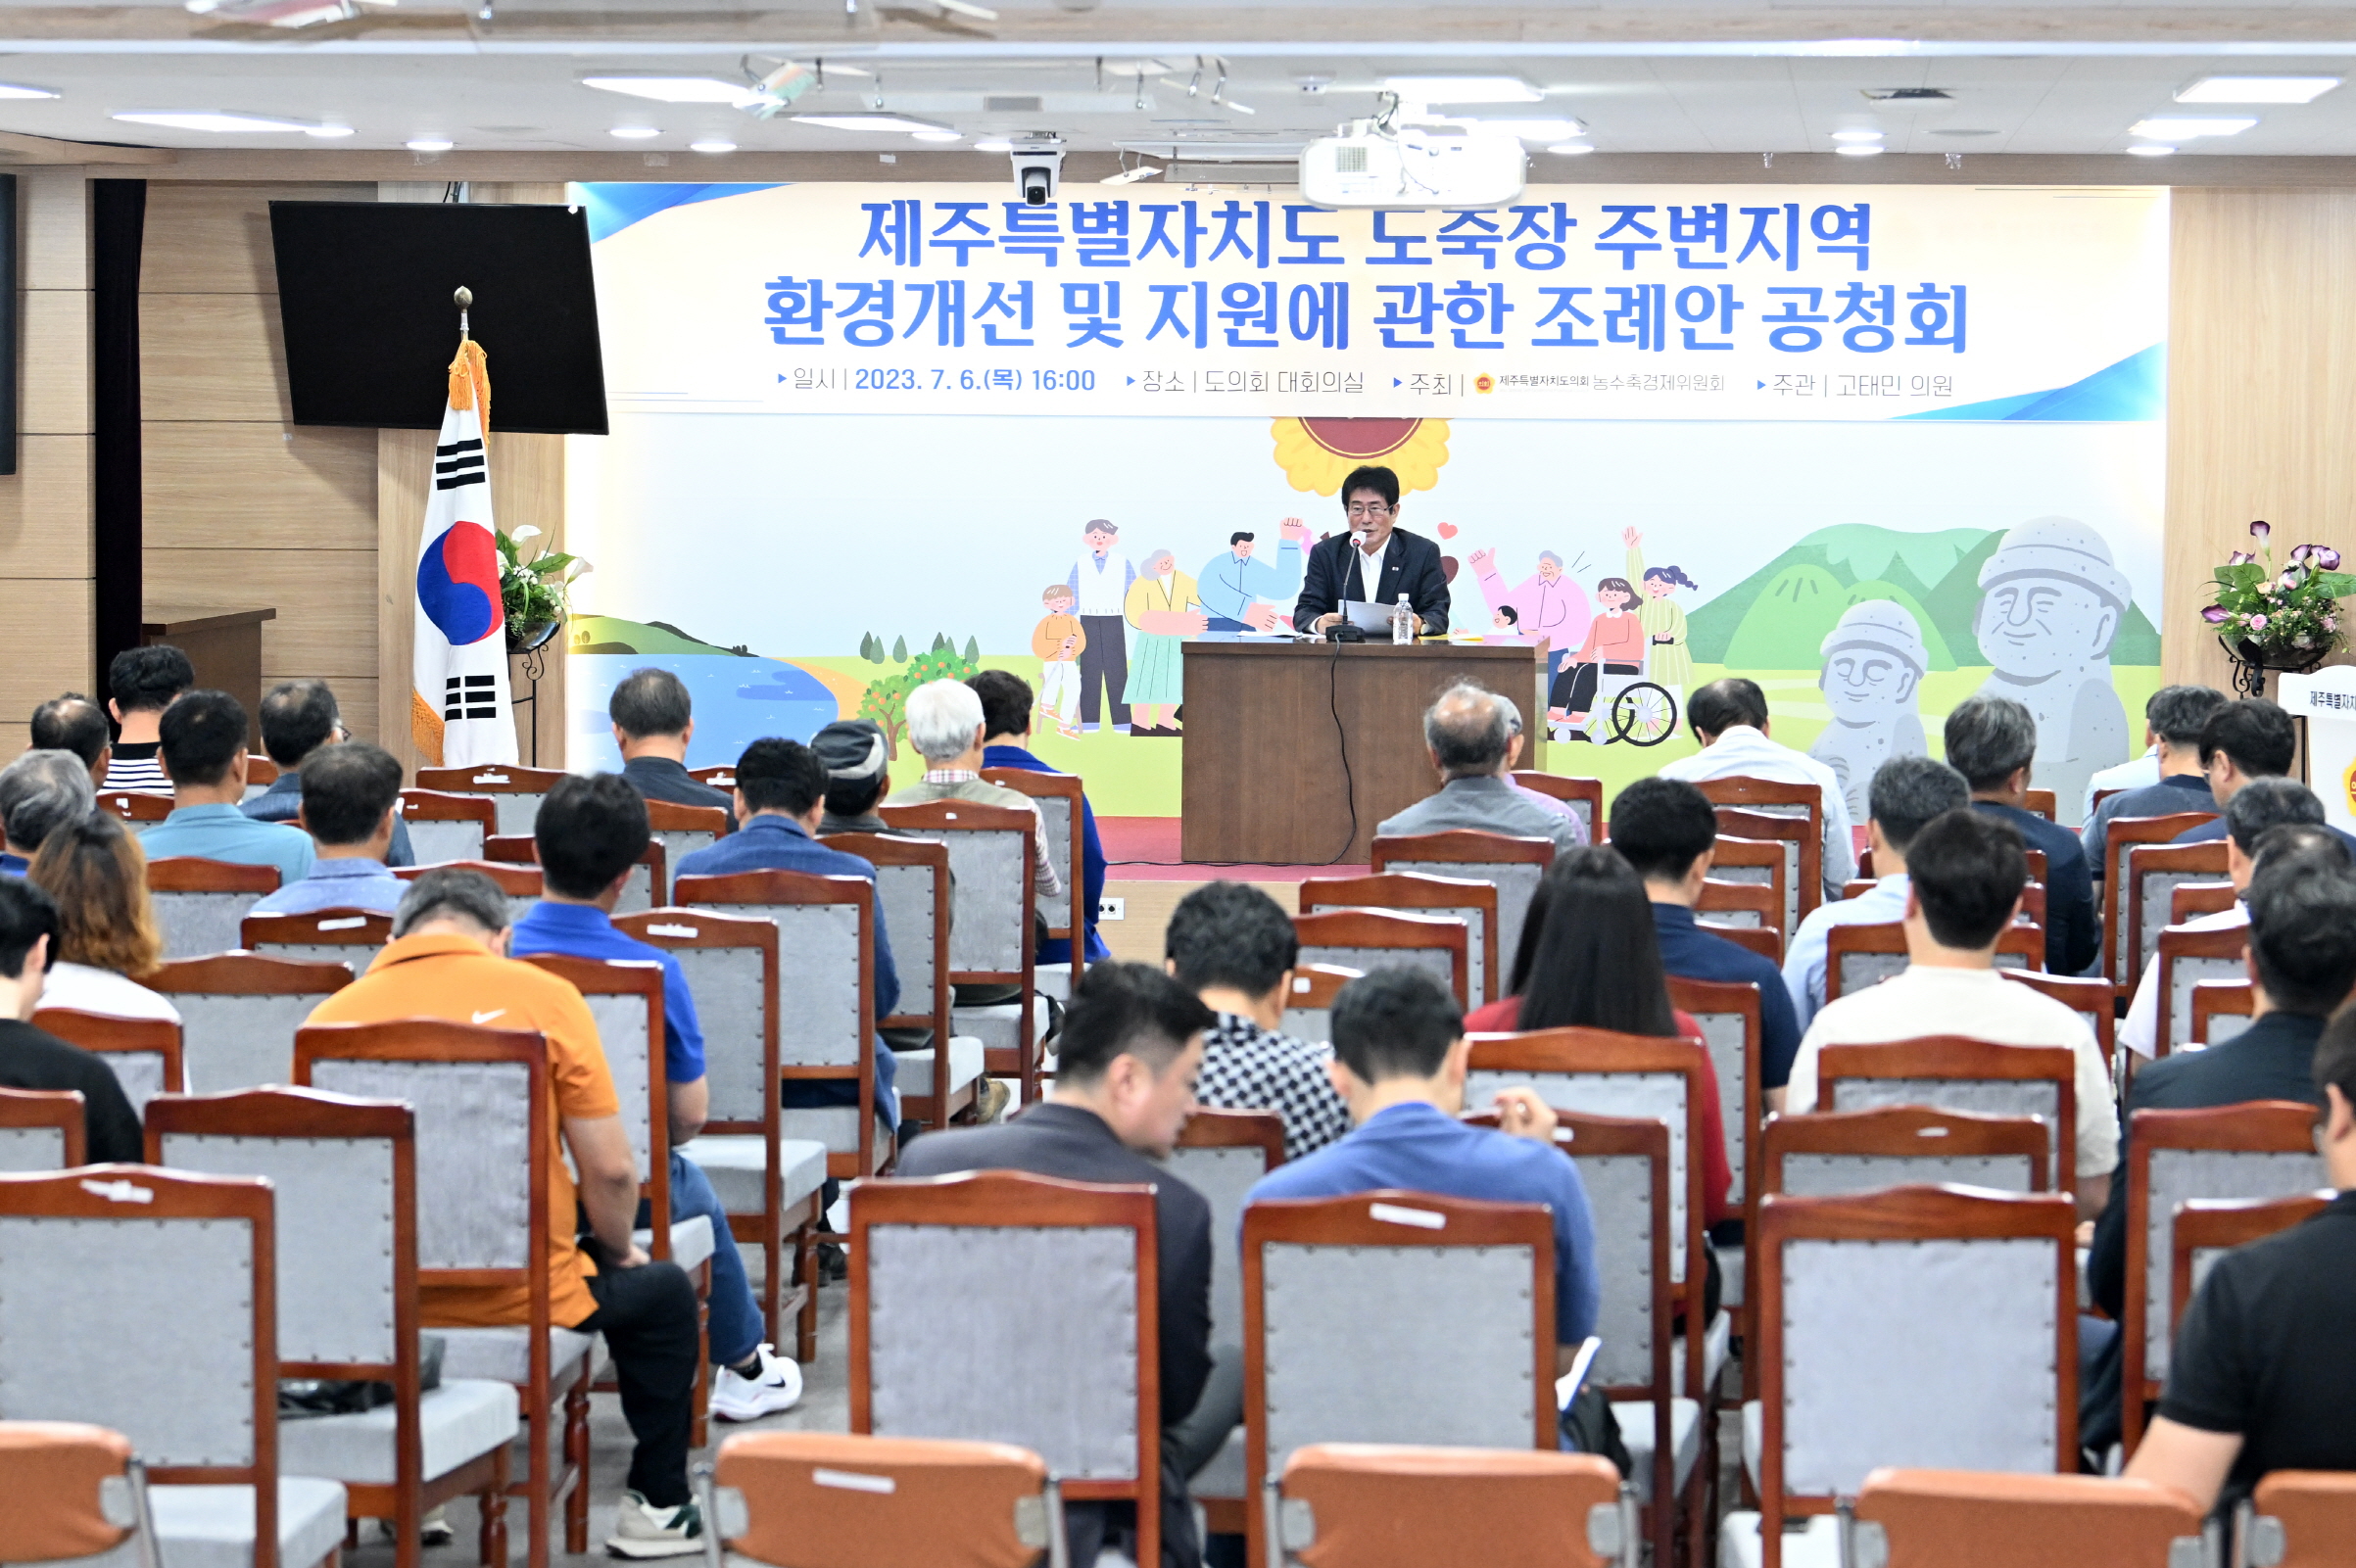 (보도자료)고태민 의원, 도축장 주변지역 환경개선 및 지원에 관한 조례안 공청회 개최 결과